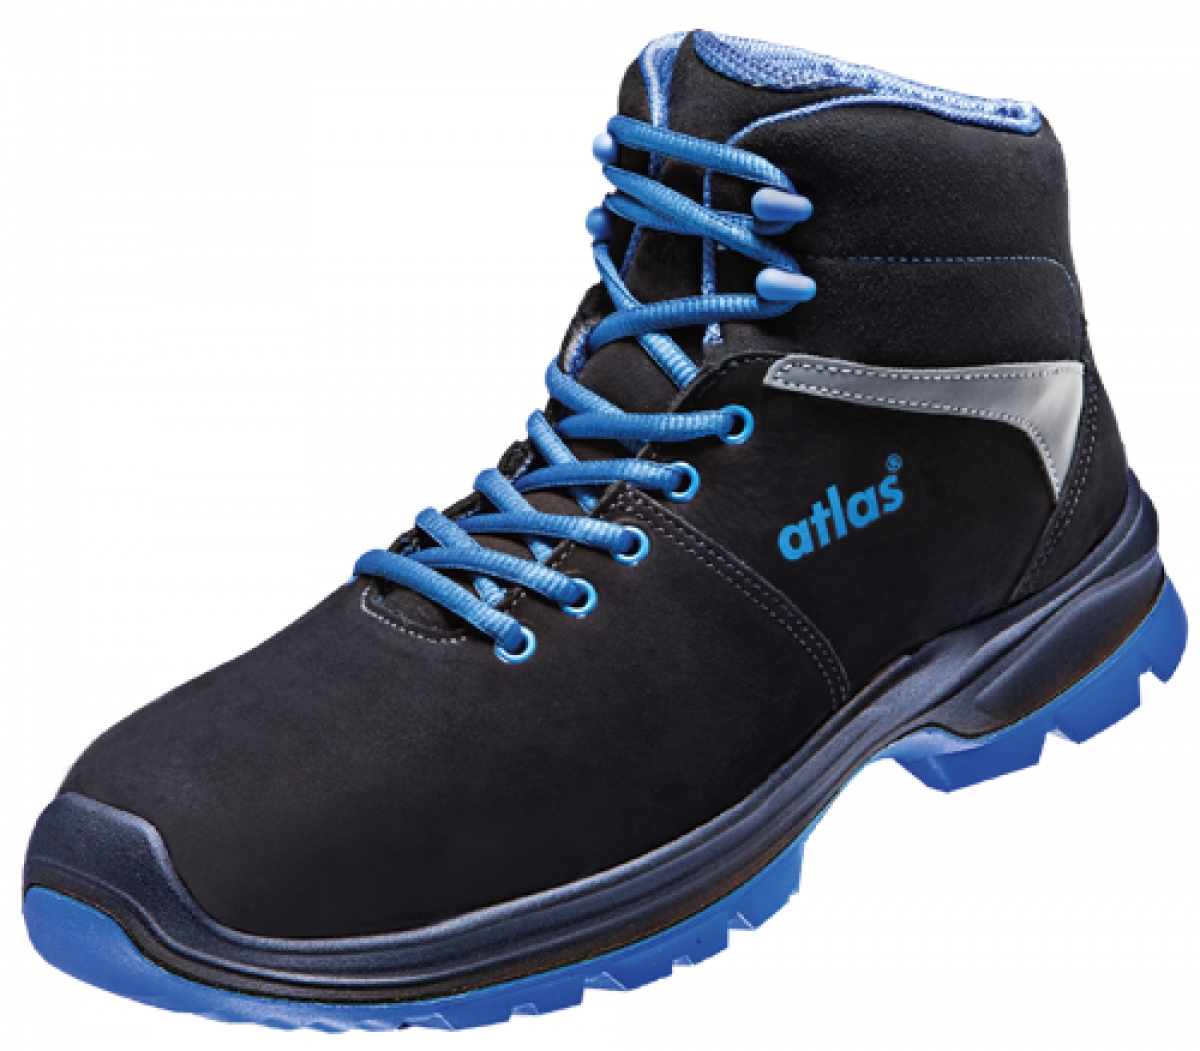 ATLAS-S3-Sicherheitsschuhe, ERGO-MED 805 XP, ESD, Weite 13, schwarz/blau